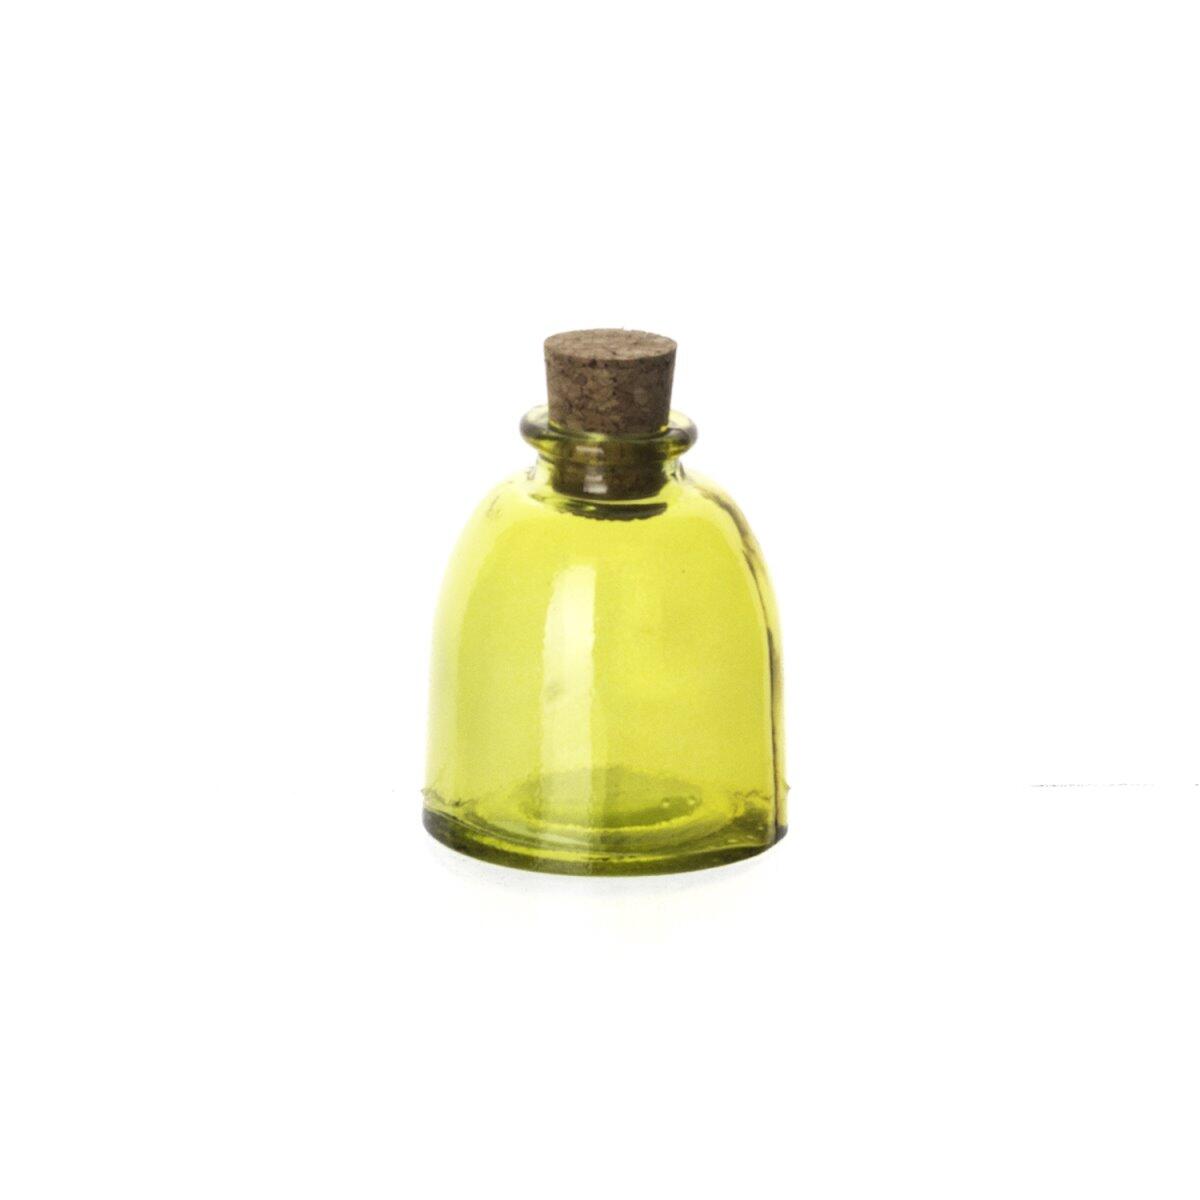 Sanmiguel Oil Bottle